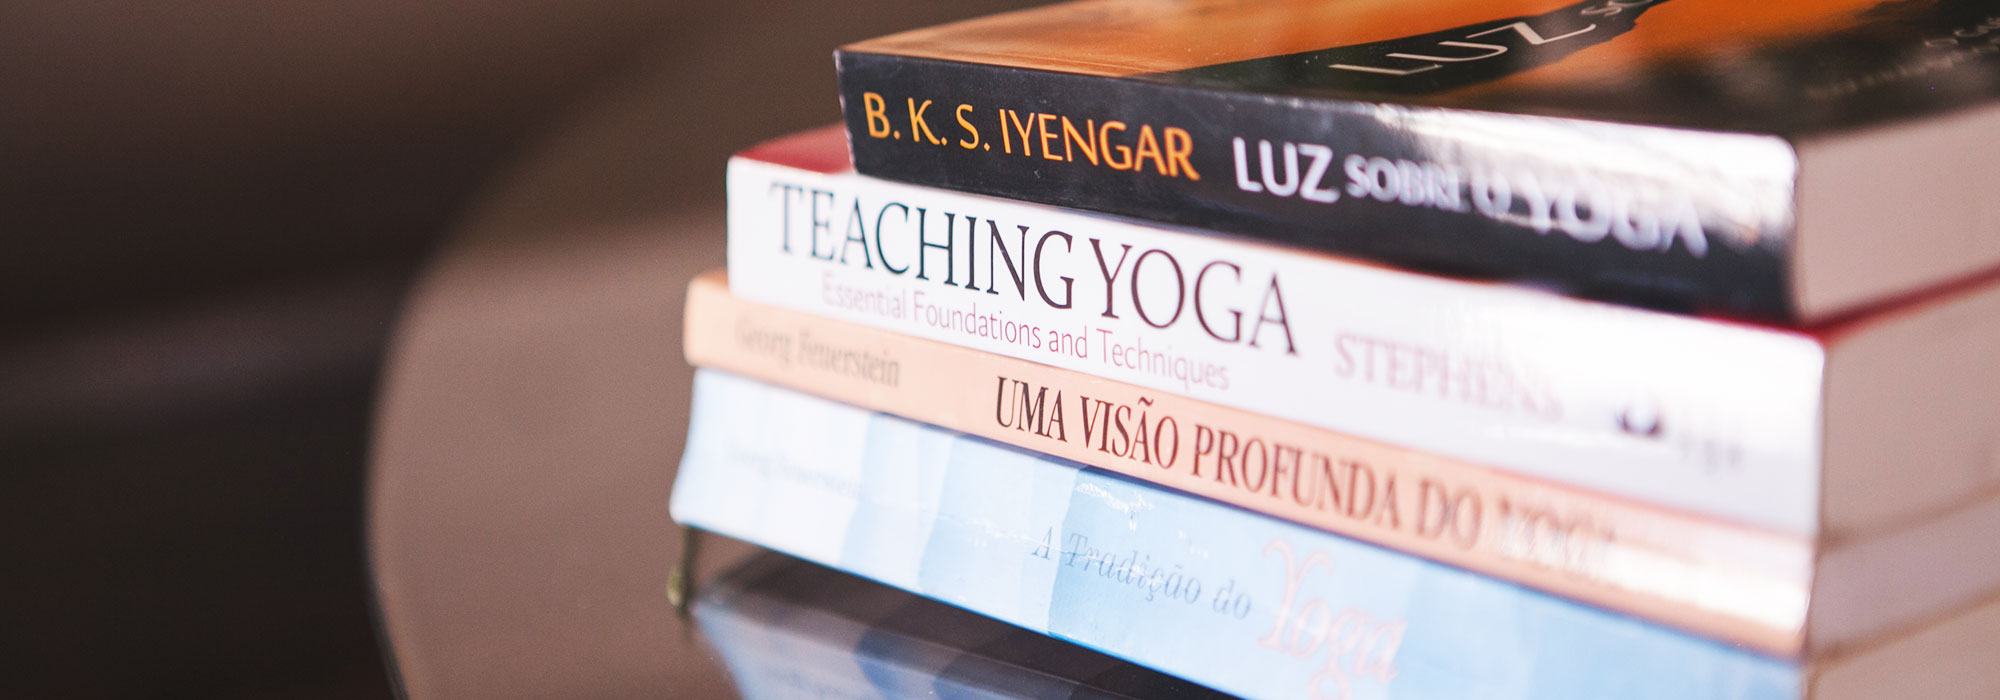 6 livros sobre yoga essenciais para quem quer se aprofundar na prática